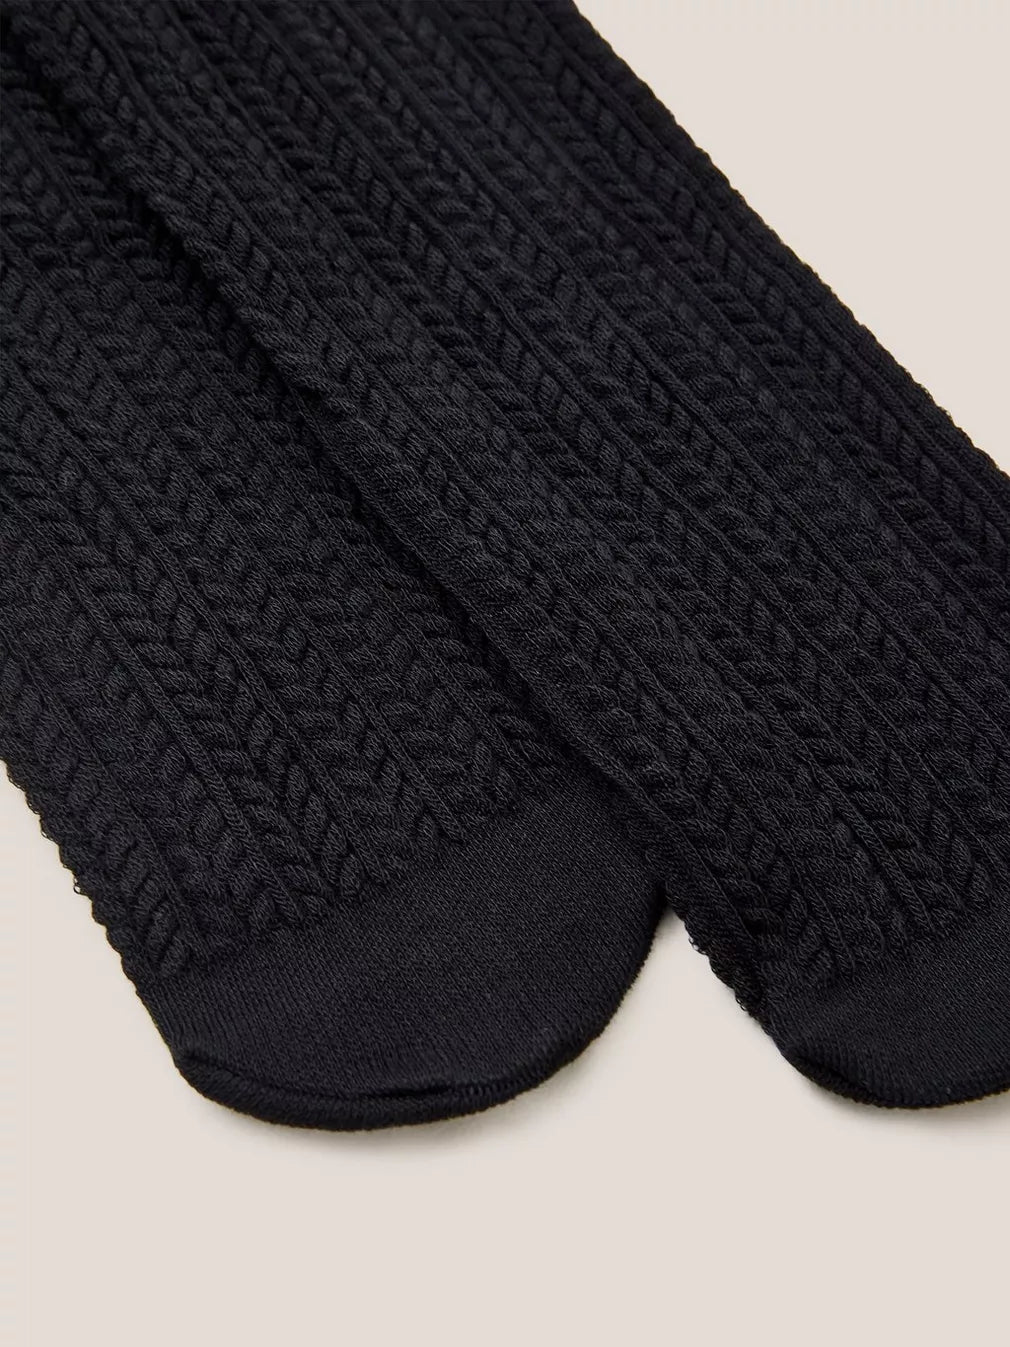 Cara Cable Knit Tights